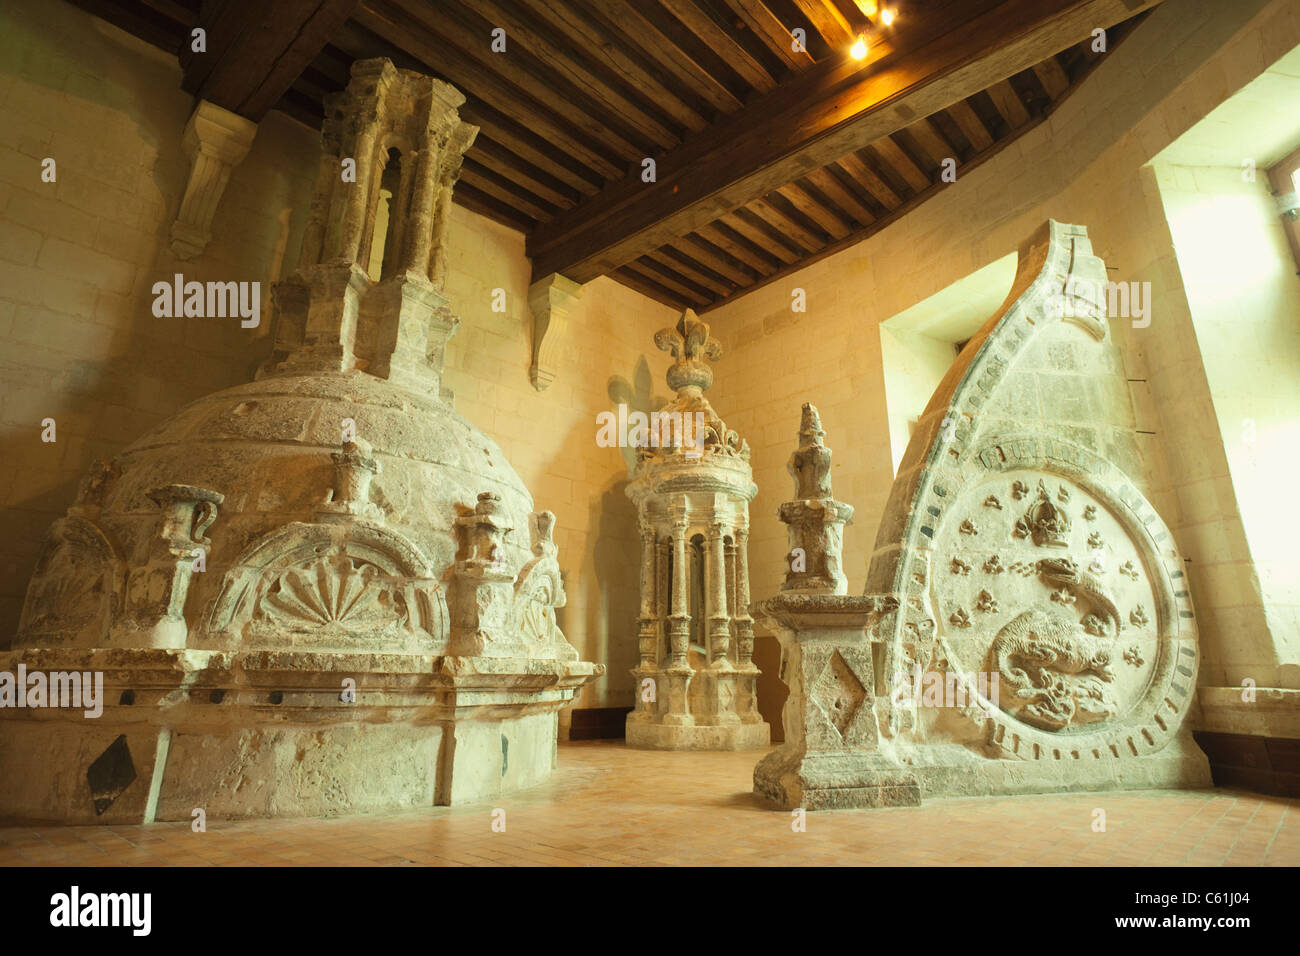 Francia, Valle della Loira, Castello di Chambord, la sala lapidaria display del tetto originale muratura in pietra, dettaglio della salamandra scultura Foto Stock